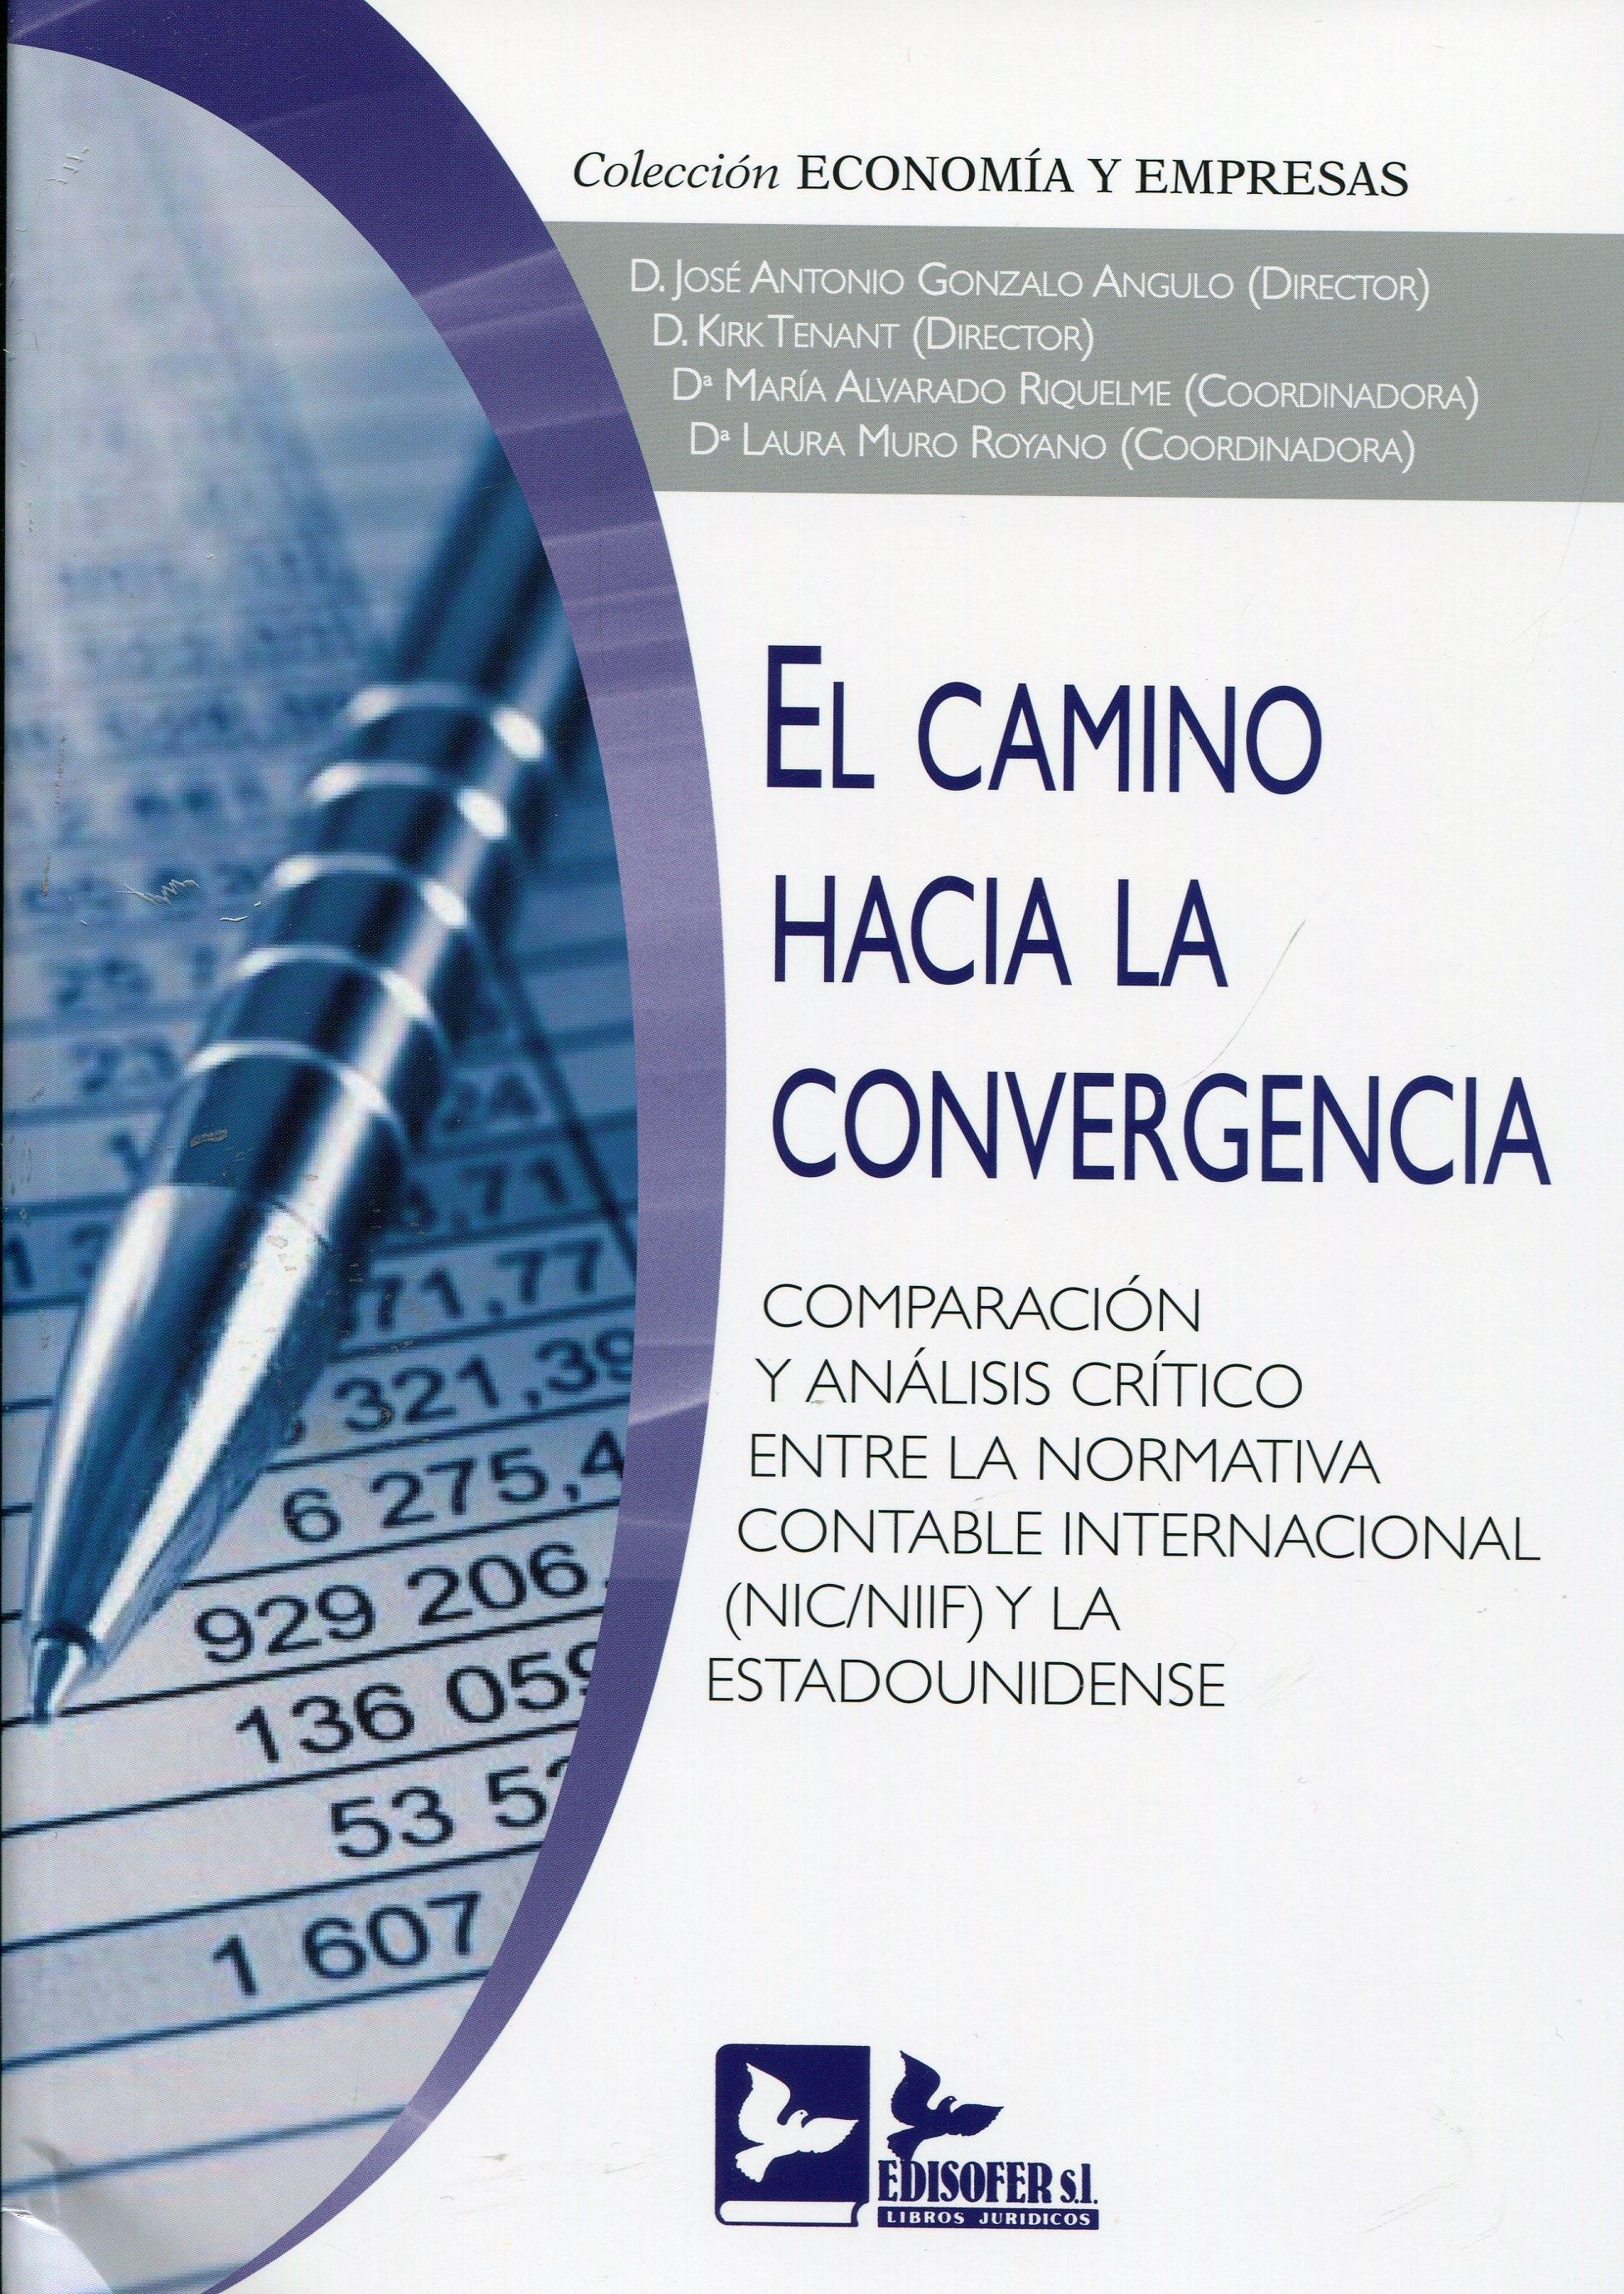 El camino hacia la convergencia "Comparación y análisis crítico entre la normativa contable inter"